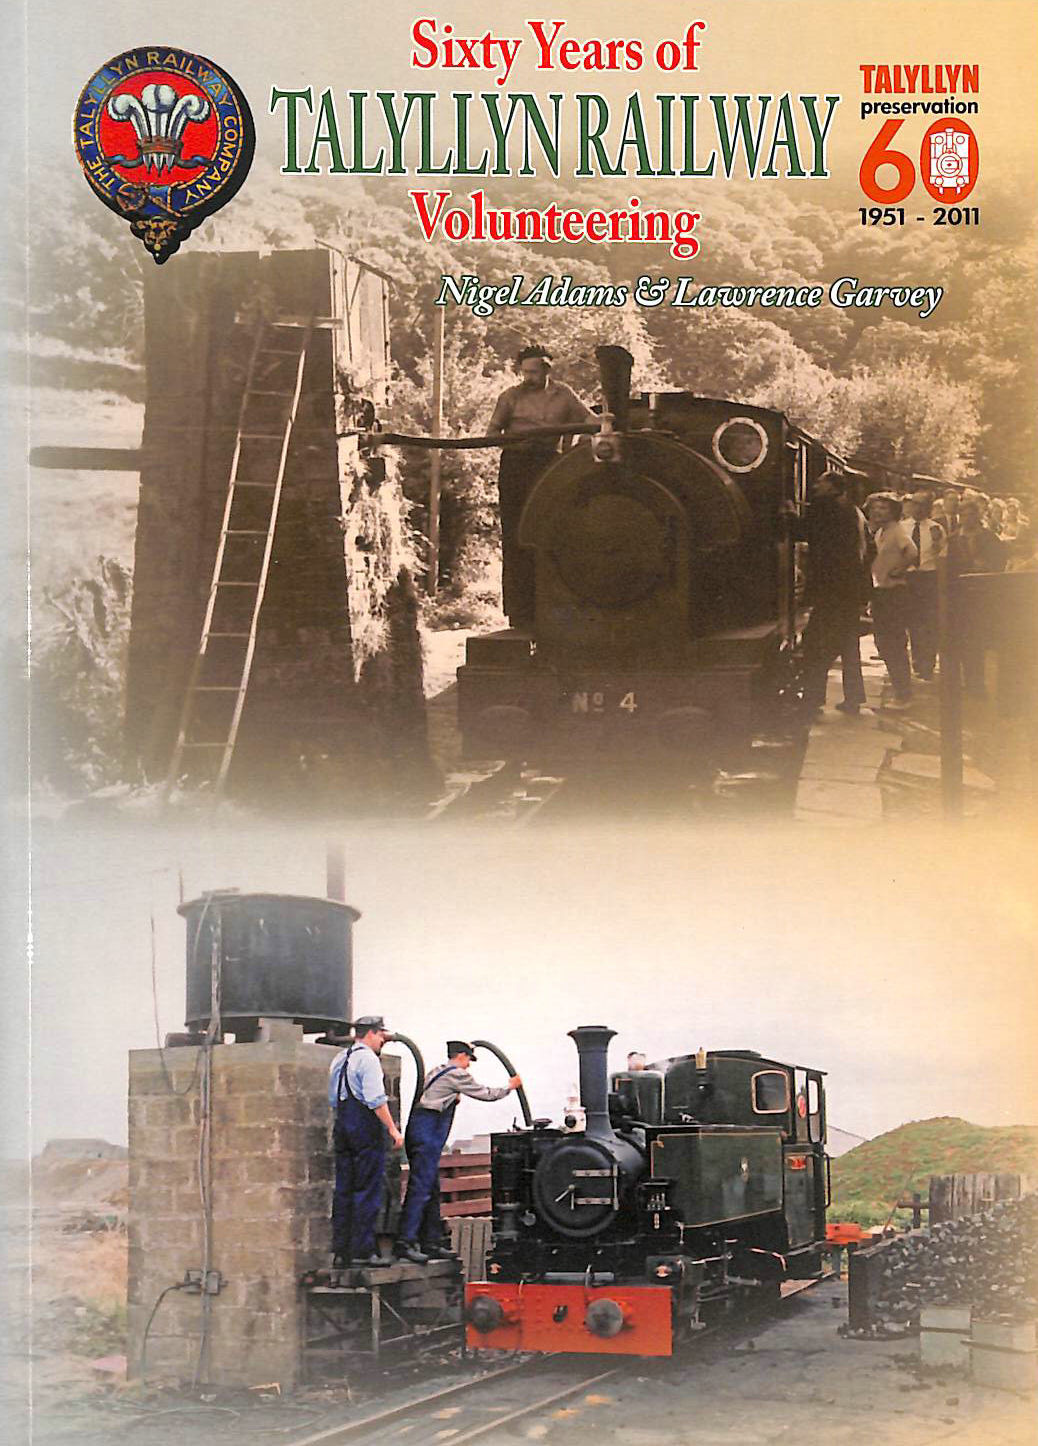 ADAMS, NIGEL; GARVEY, LAWRENCE - Sixty Years of Volunteering on the Talyllyn Railway (Railway Heritage)